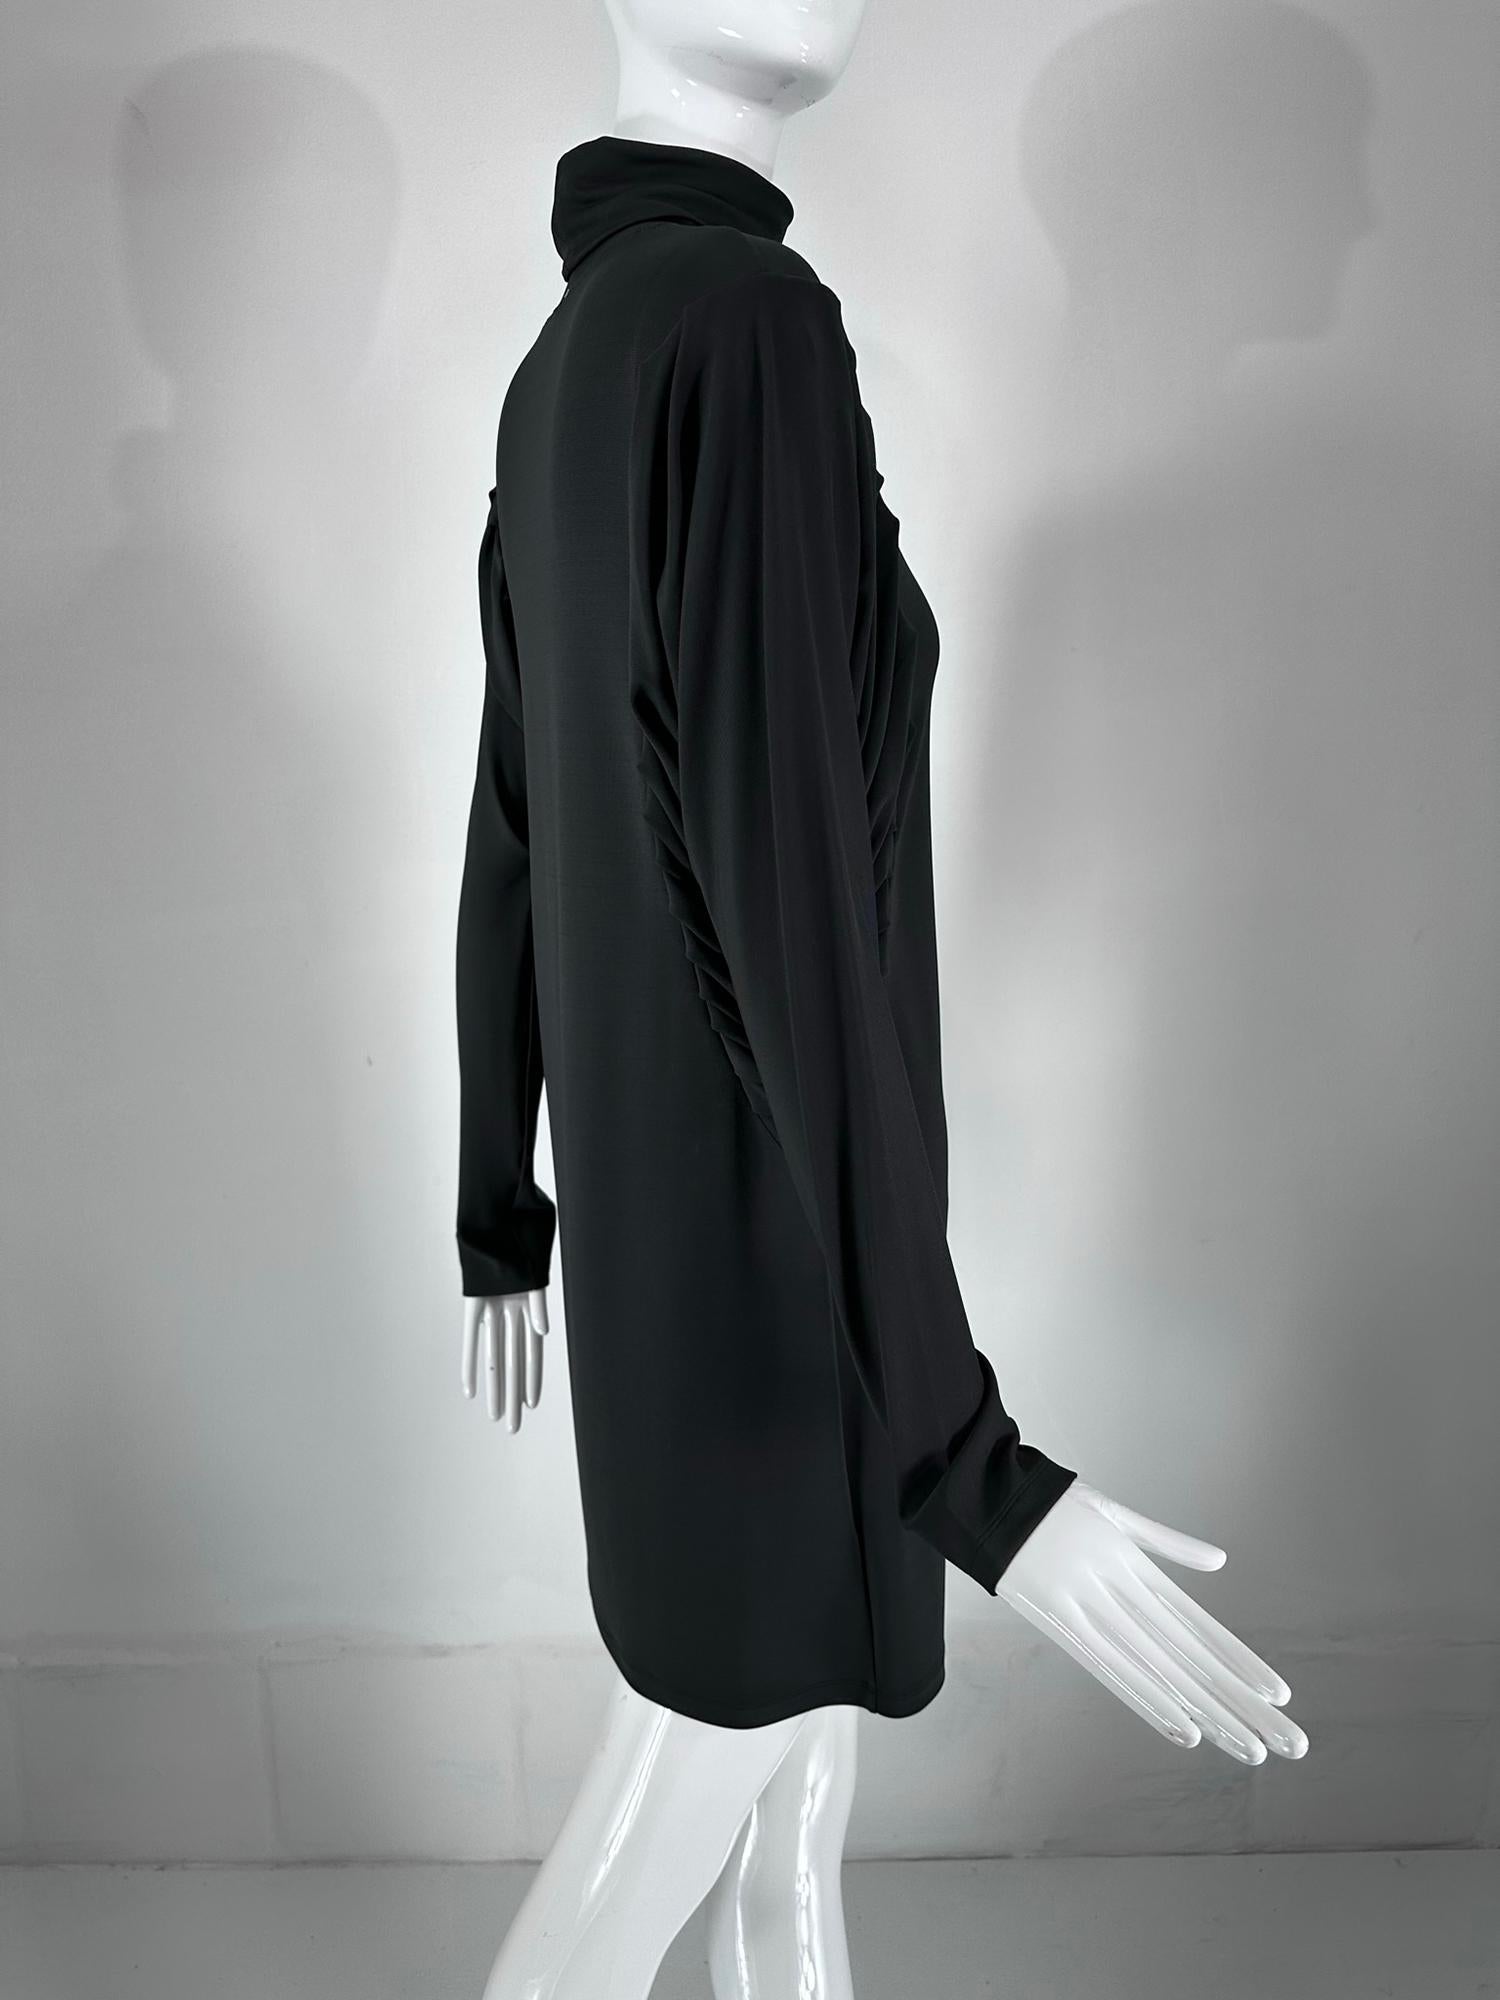 Fendi Silky Black Jersey Pleated Bat Wing Turtle Neck Dress 40 For Sale 2